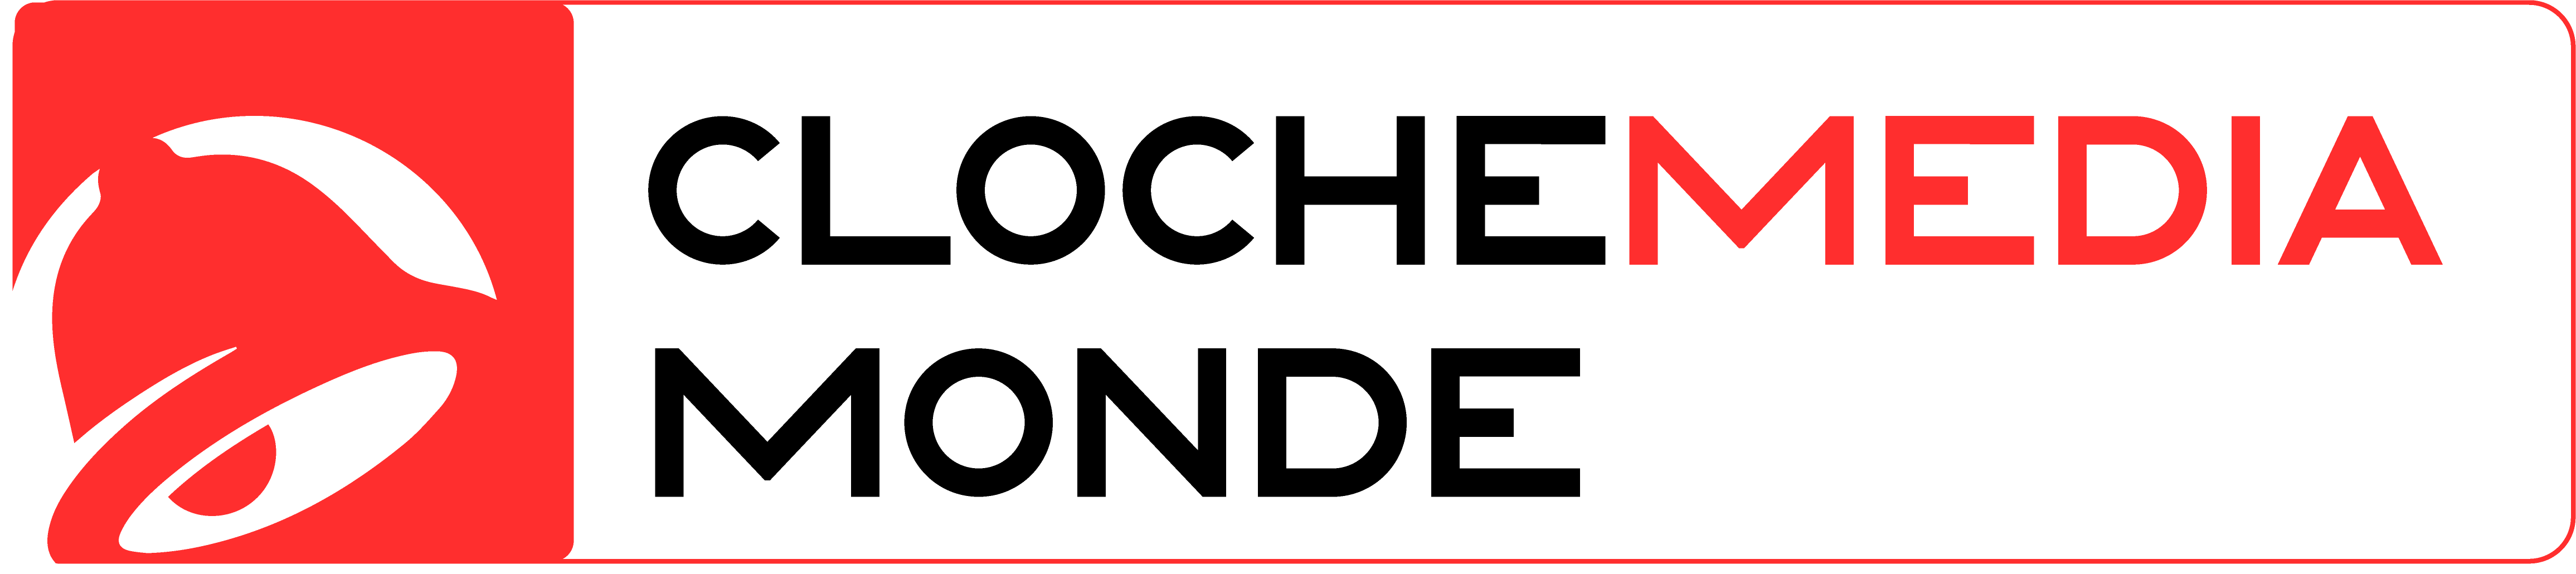 Cloche Media Monde